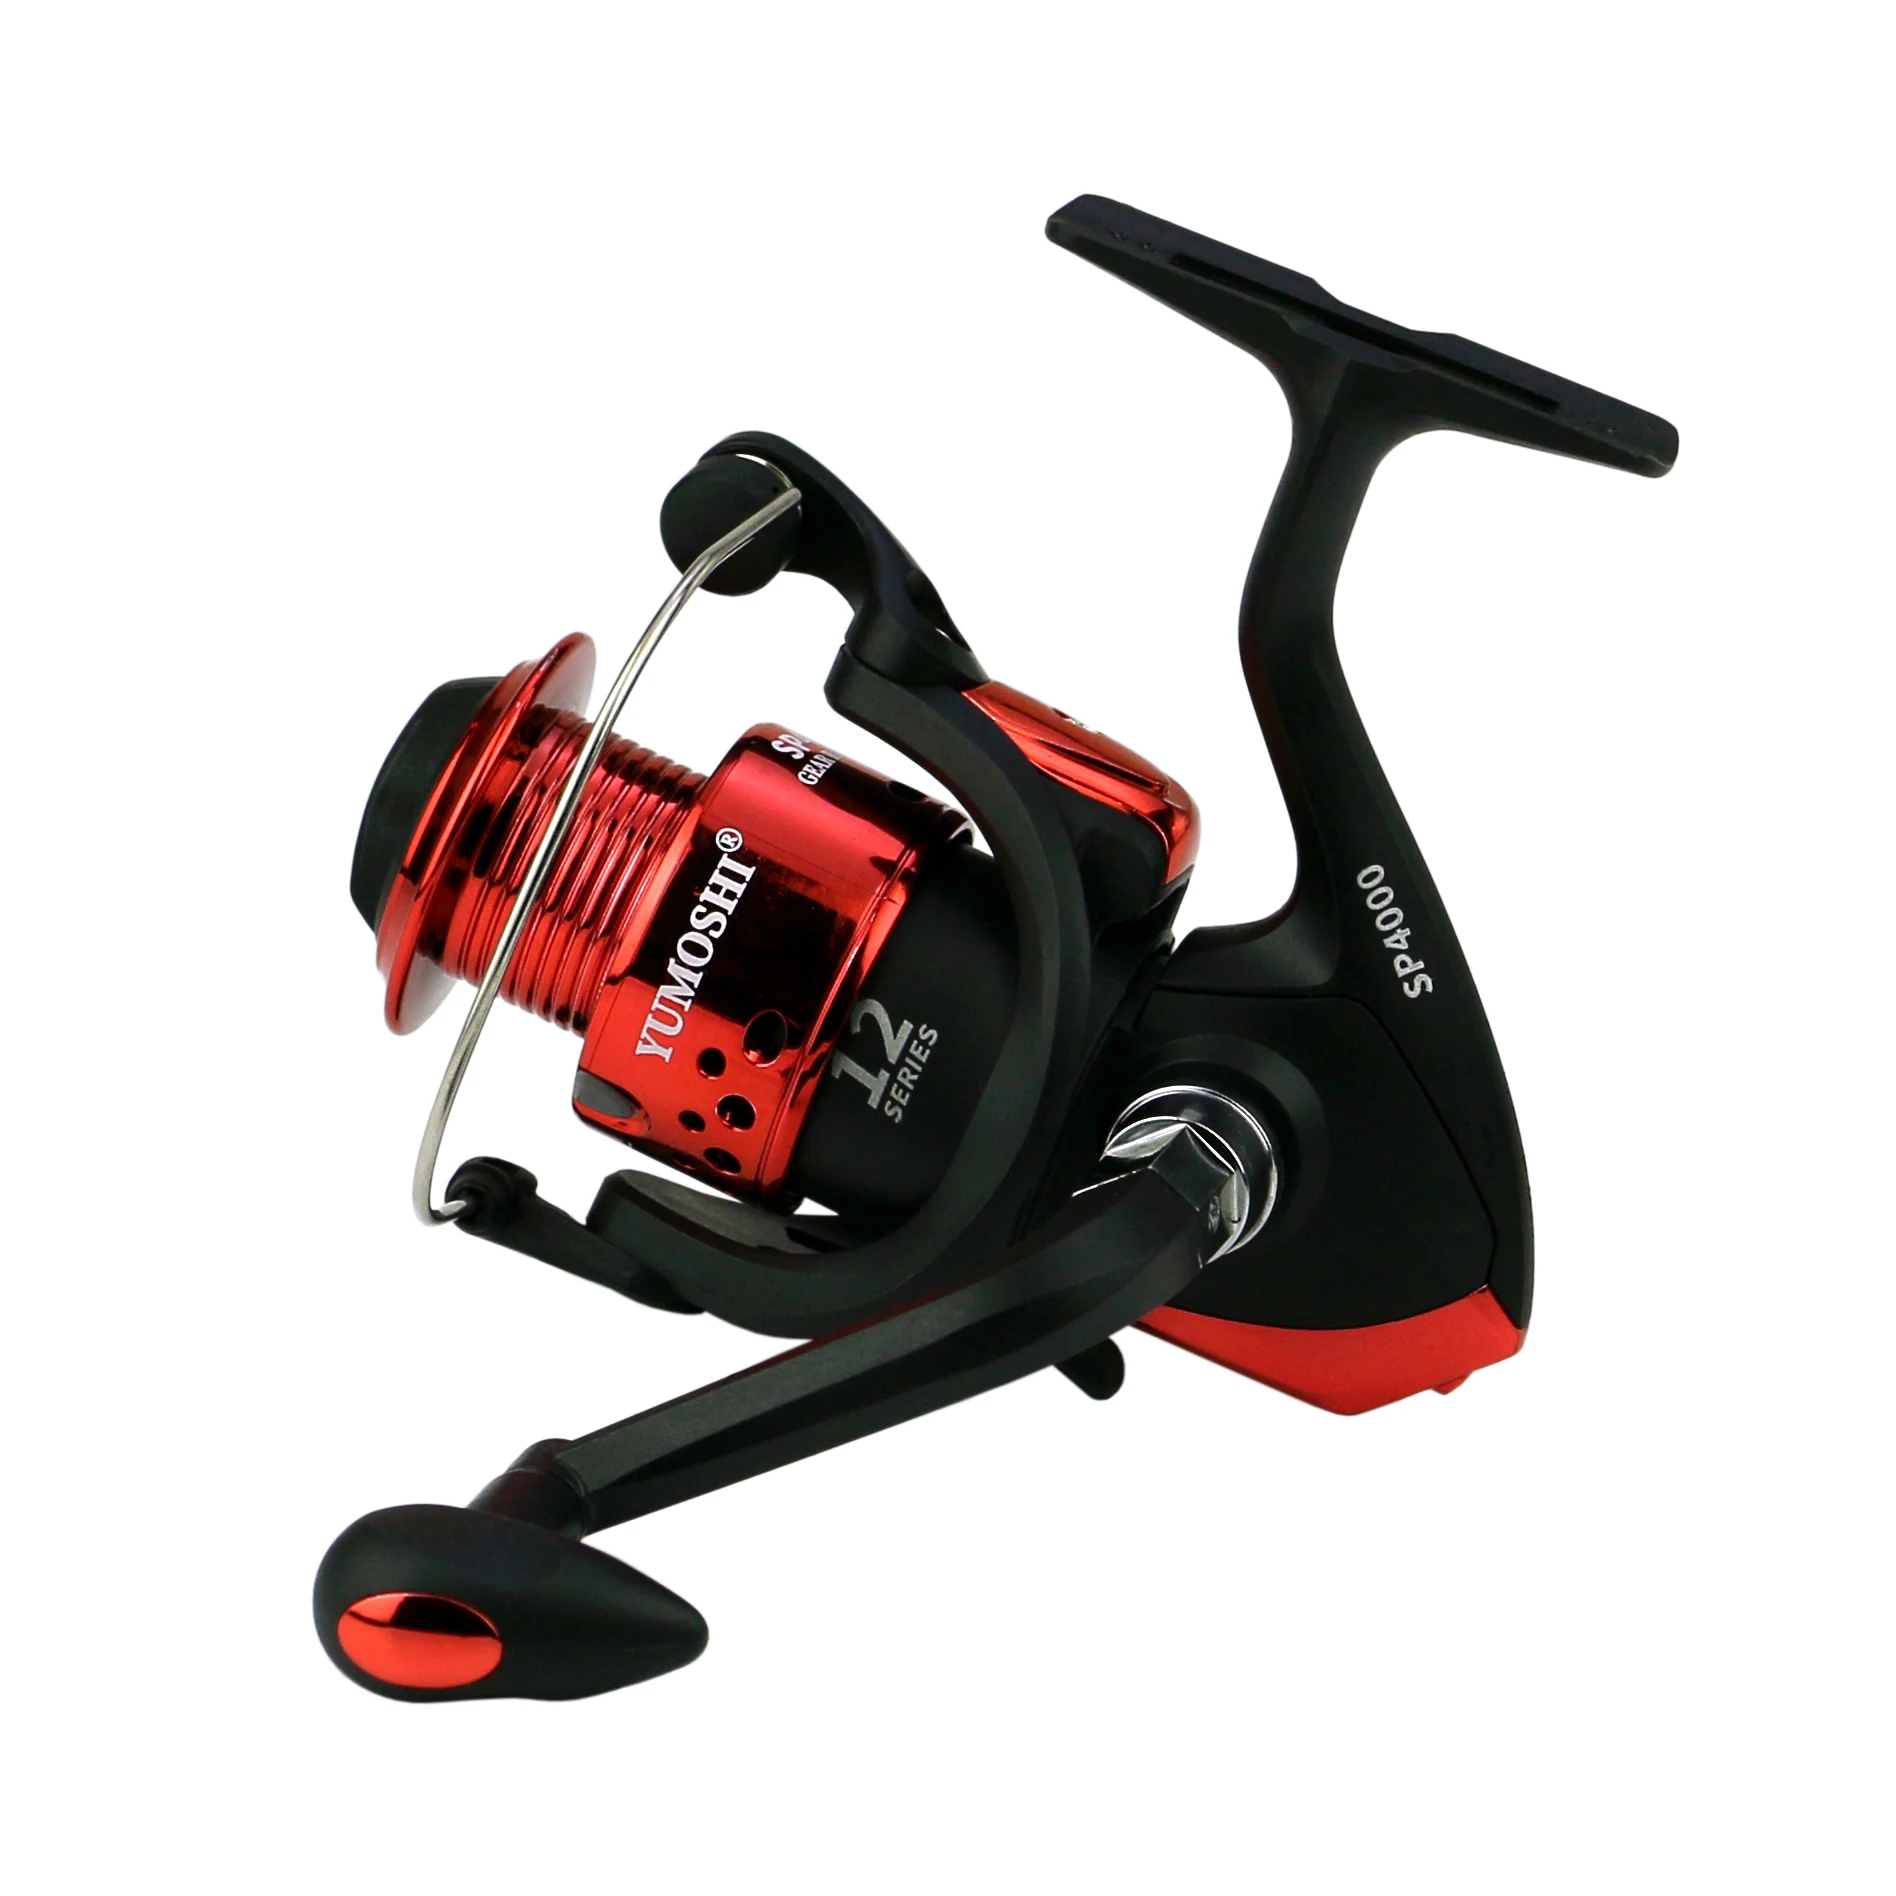 New 3000 4000 5000 6000 7000 SP-Series 5.5:1 Black Red Fishing Reel Wear-resistant Spinning Wheel Fishing Accessories enlarge